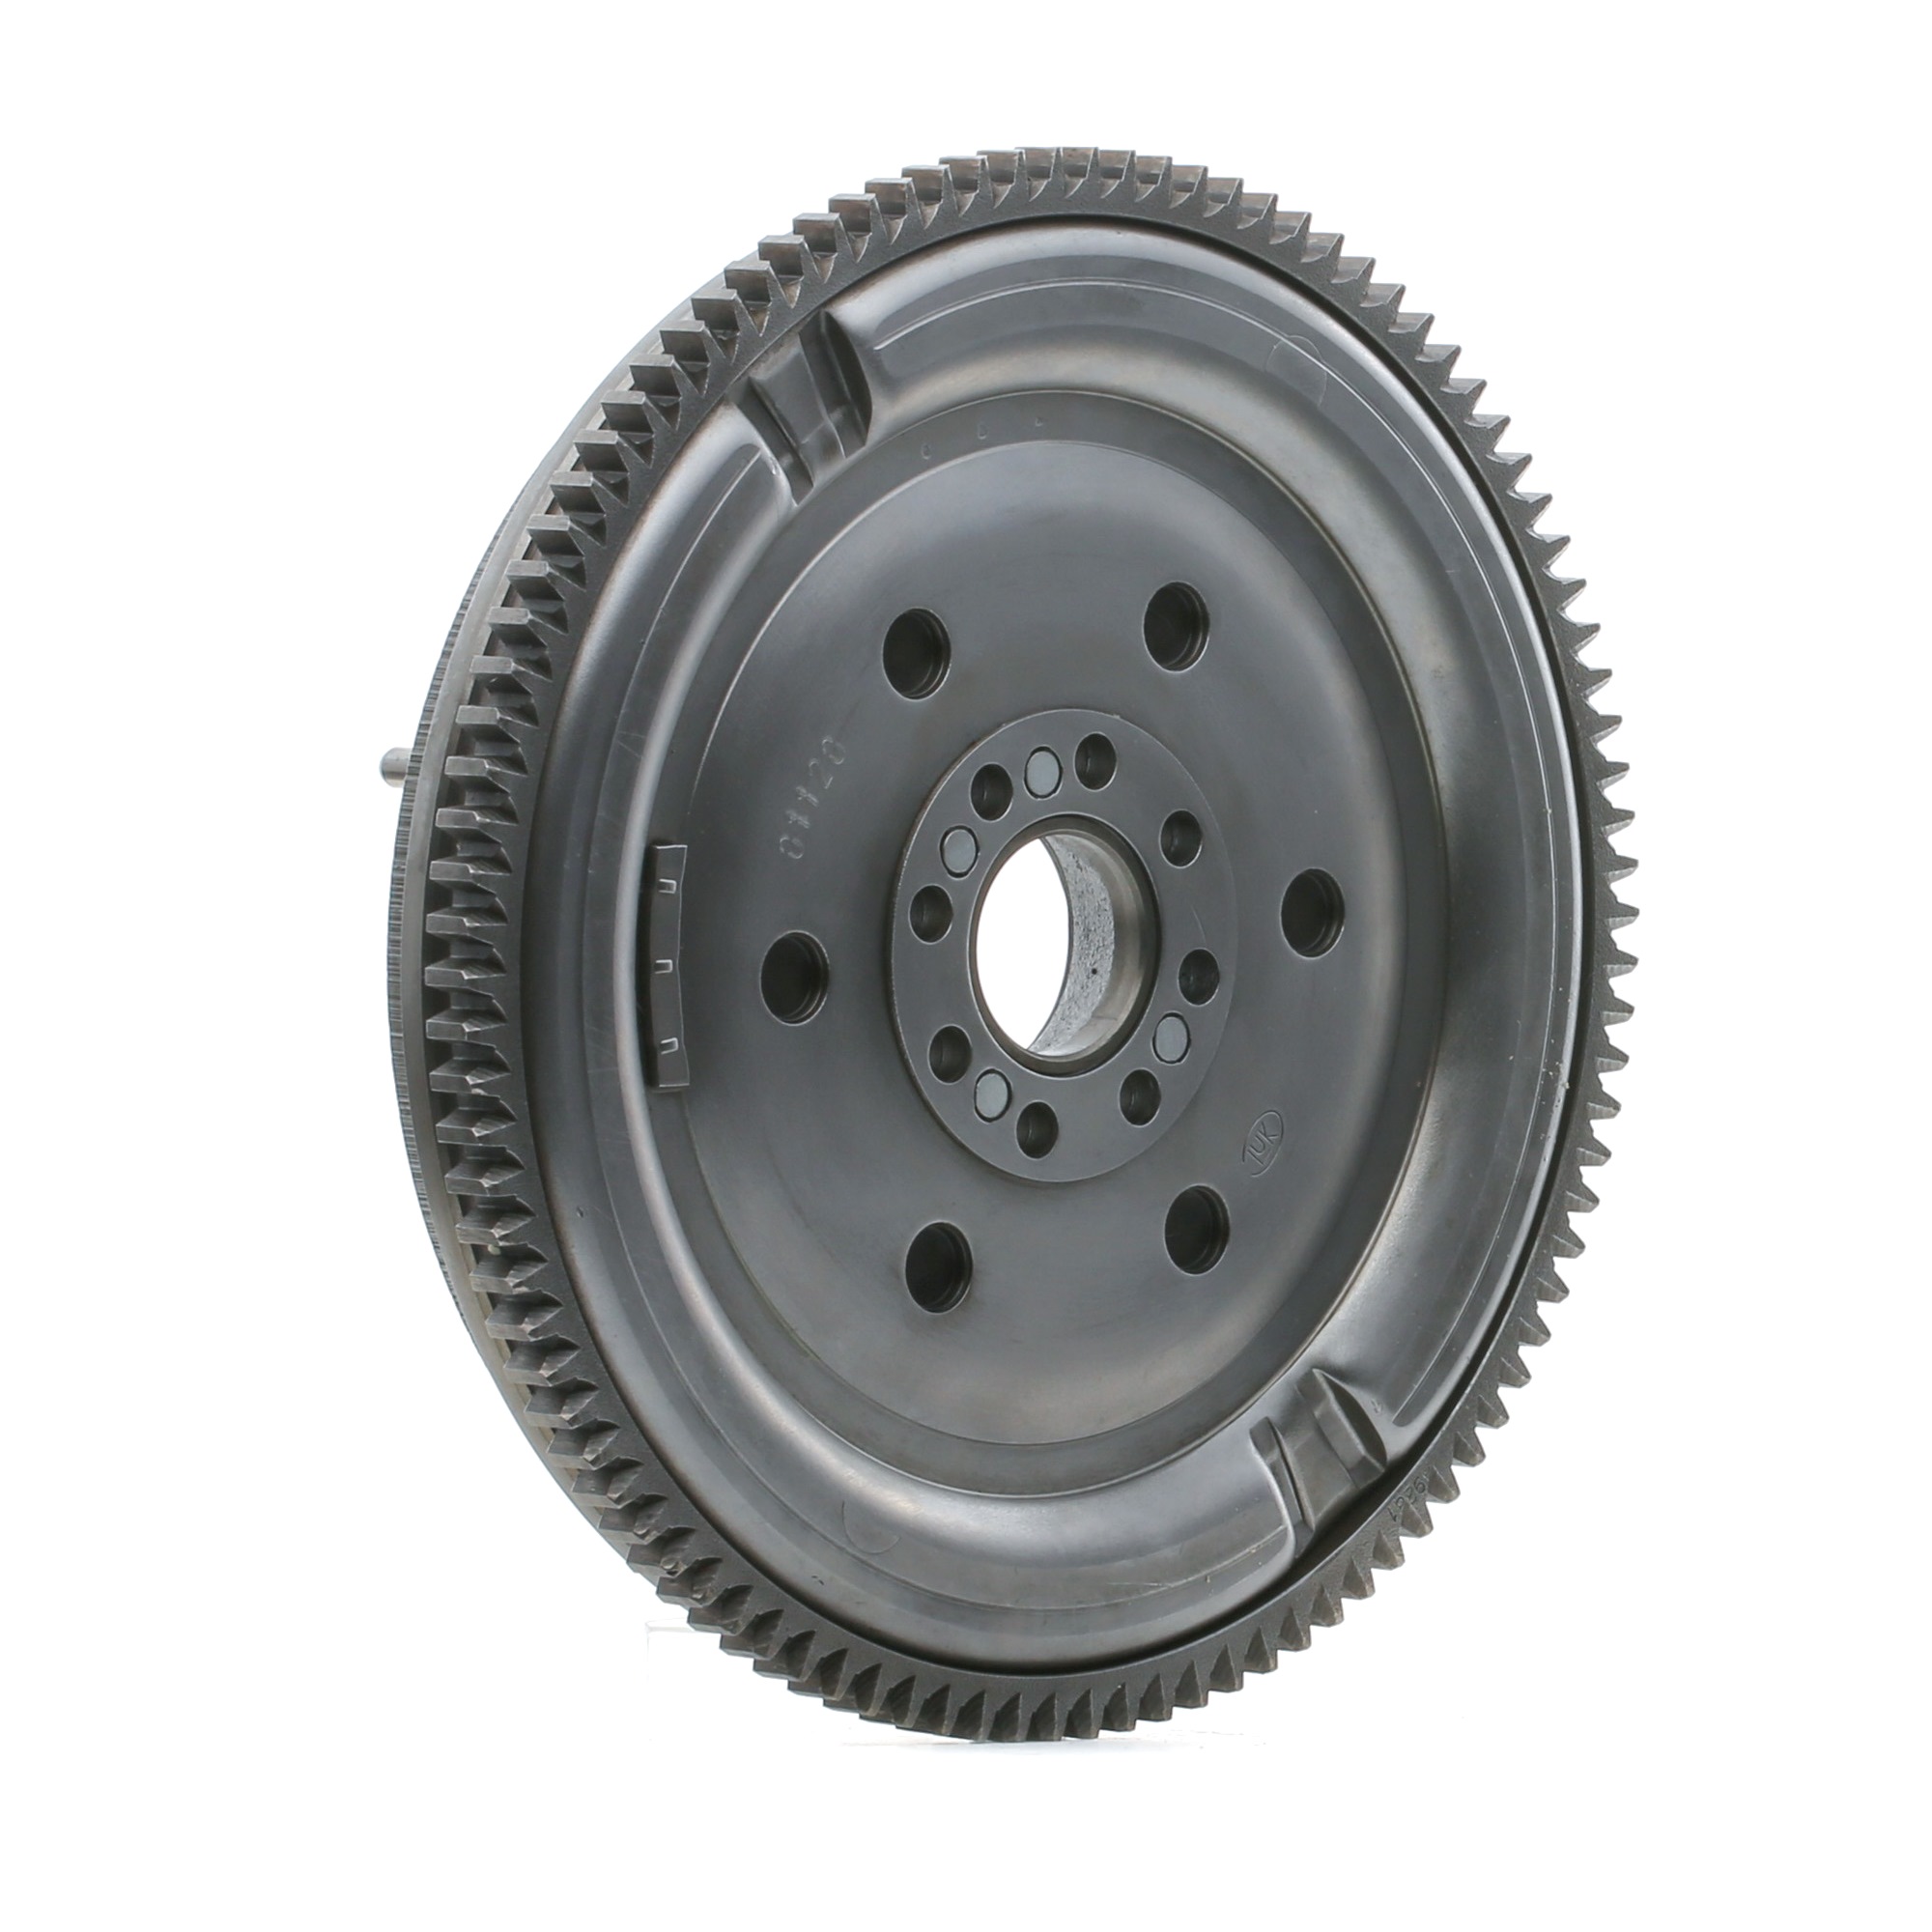 Clutch flywheel RIDEX REMAN with screw set - 577F0121R